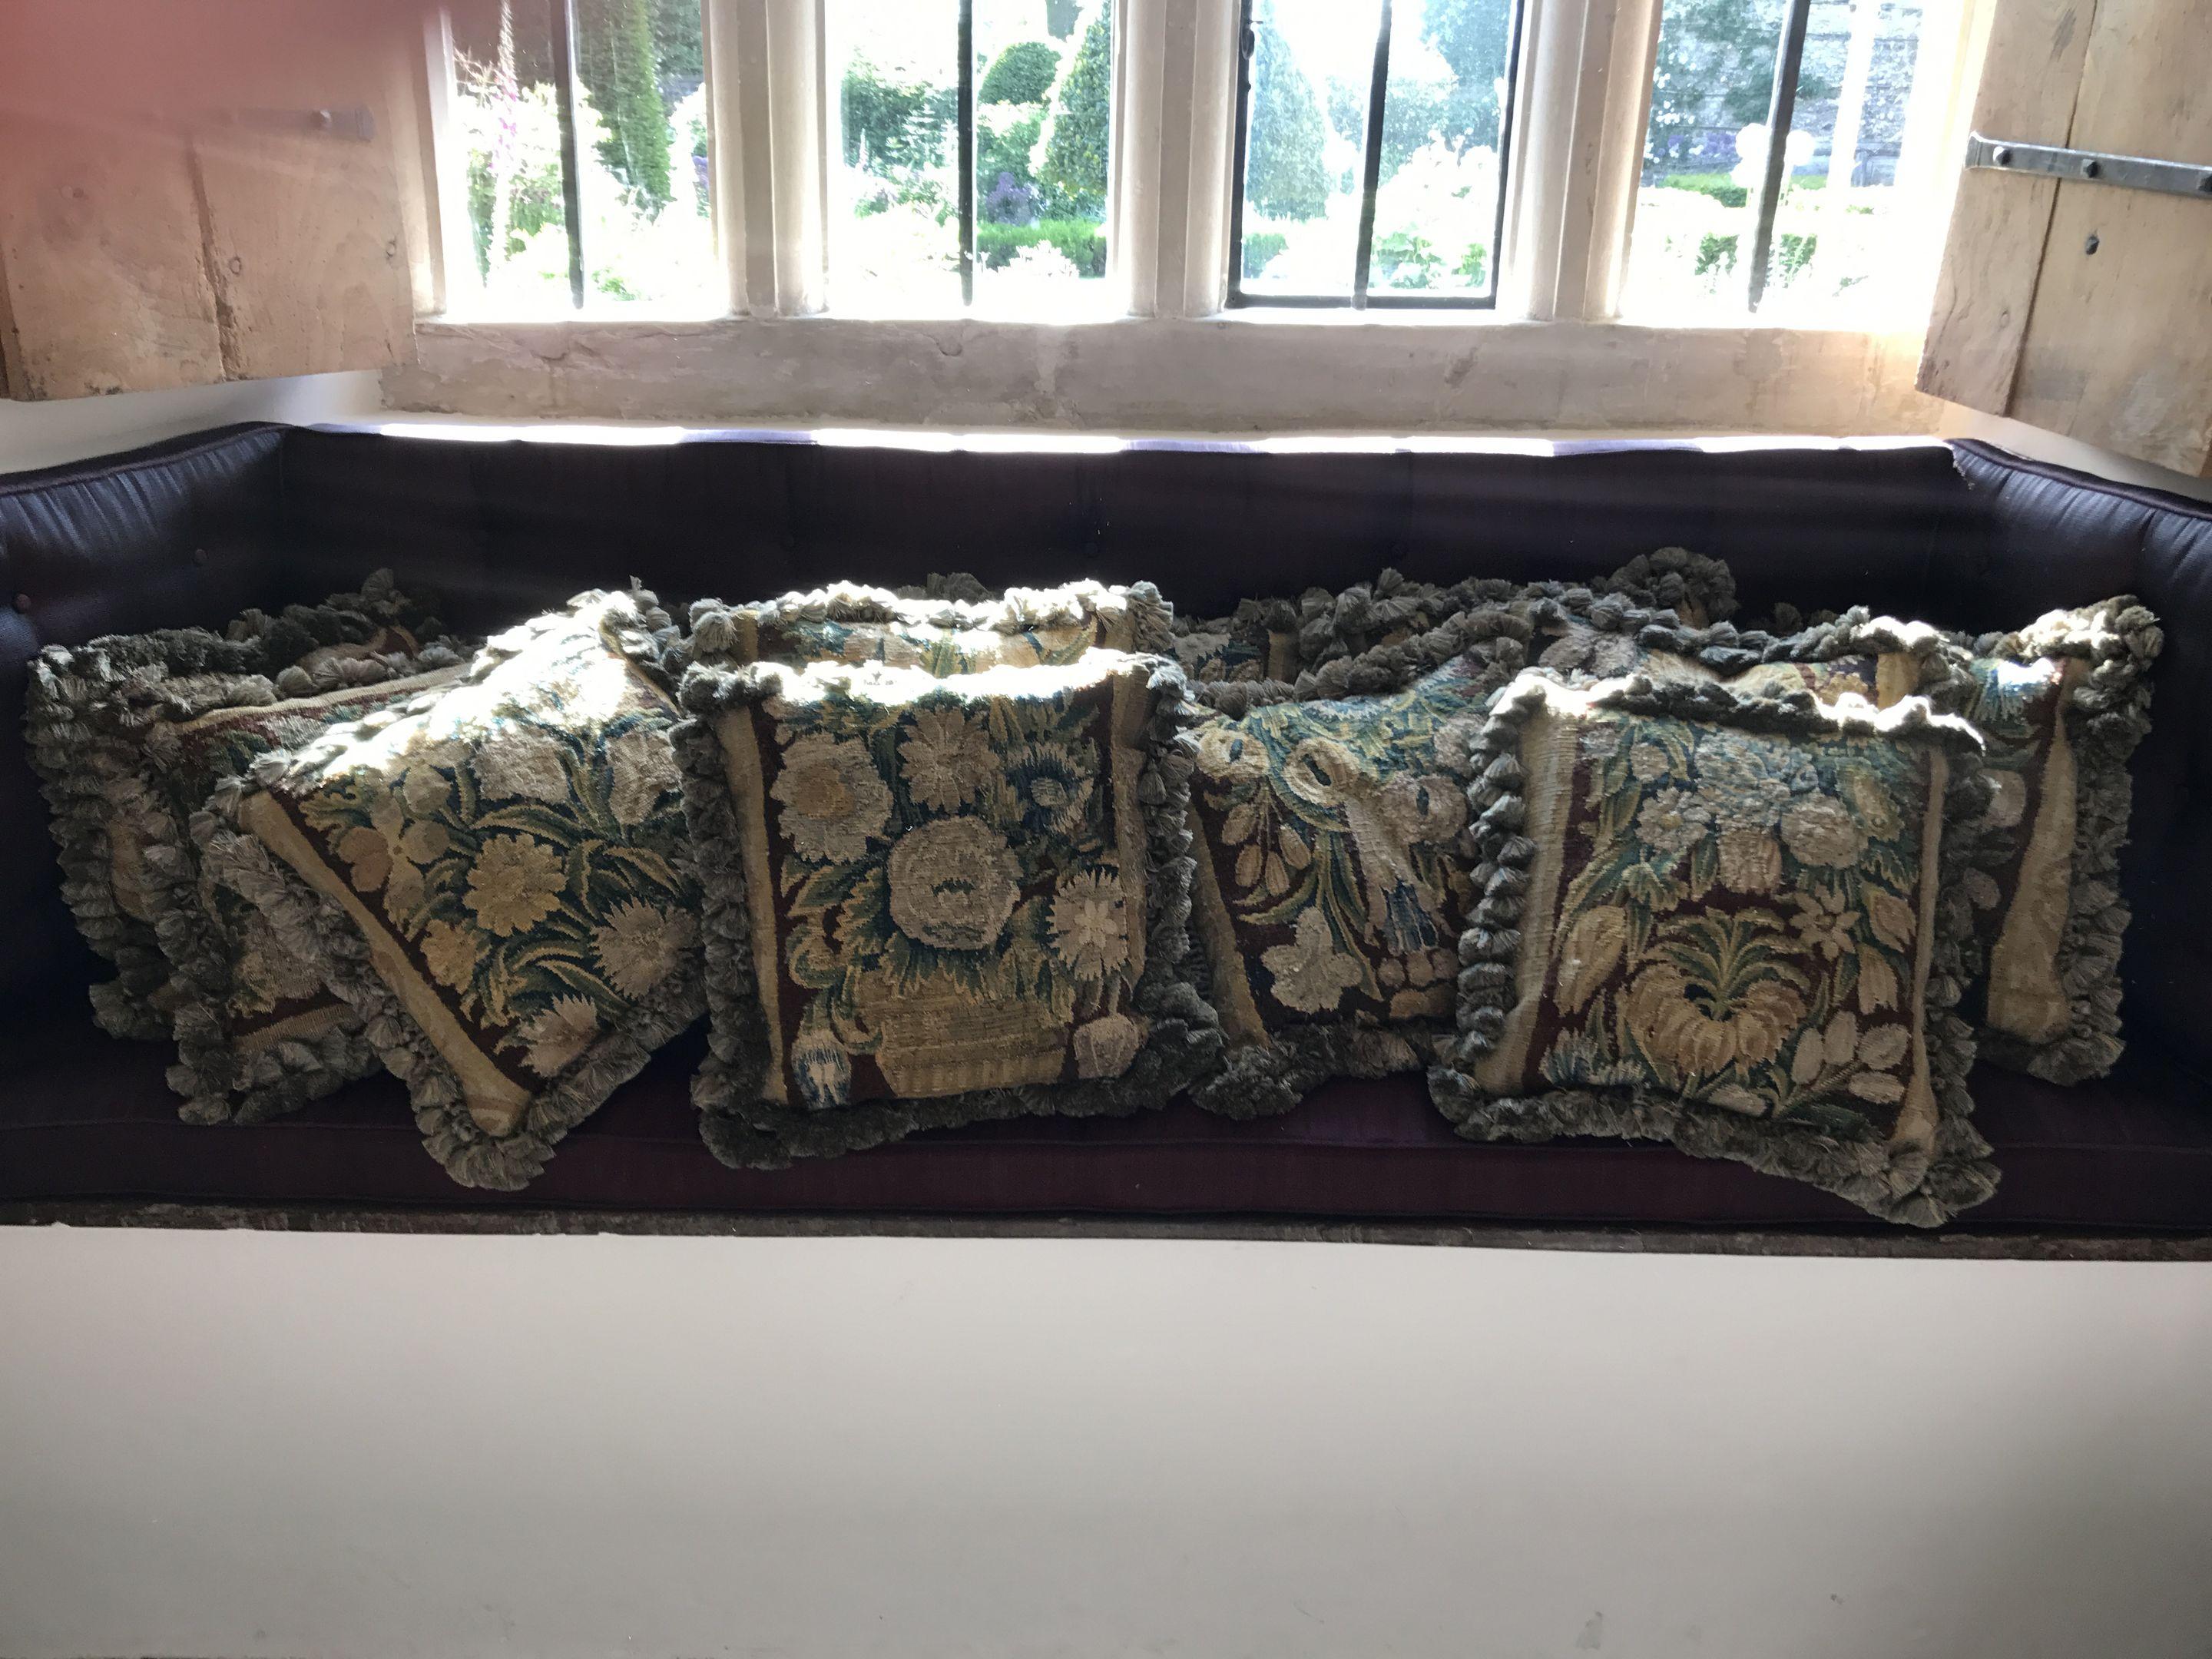 Ces oreillers ou coussins sont fabriqués à partir de deux bordures complètes d'une tapisserie de verdure du XVIIe siècle, de sorte qu'ils sont en harmonie esthétique. Ils représentent des gerbes de fleurs abondantes et chaque coussin présente une